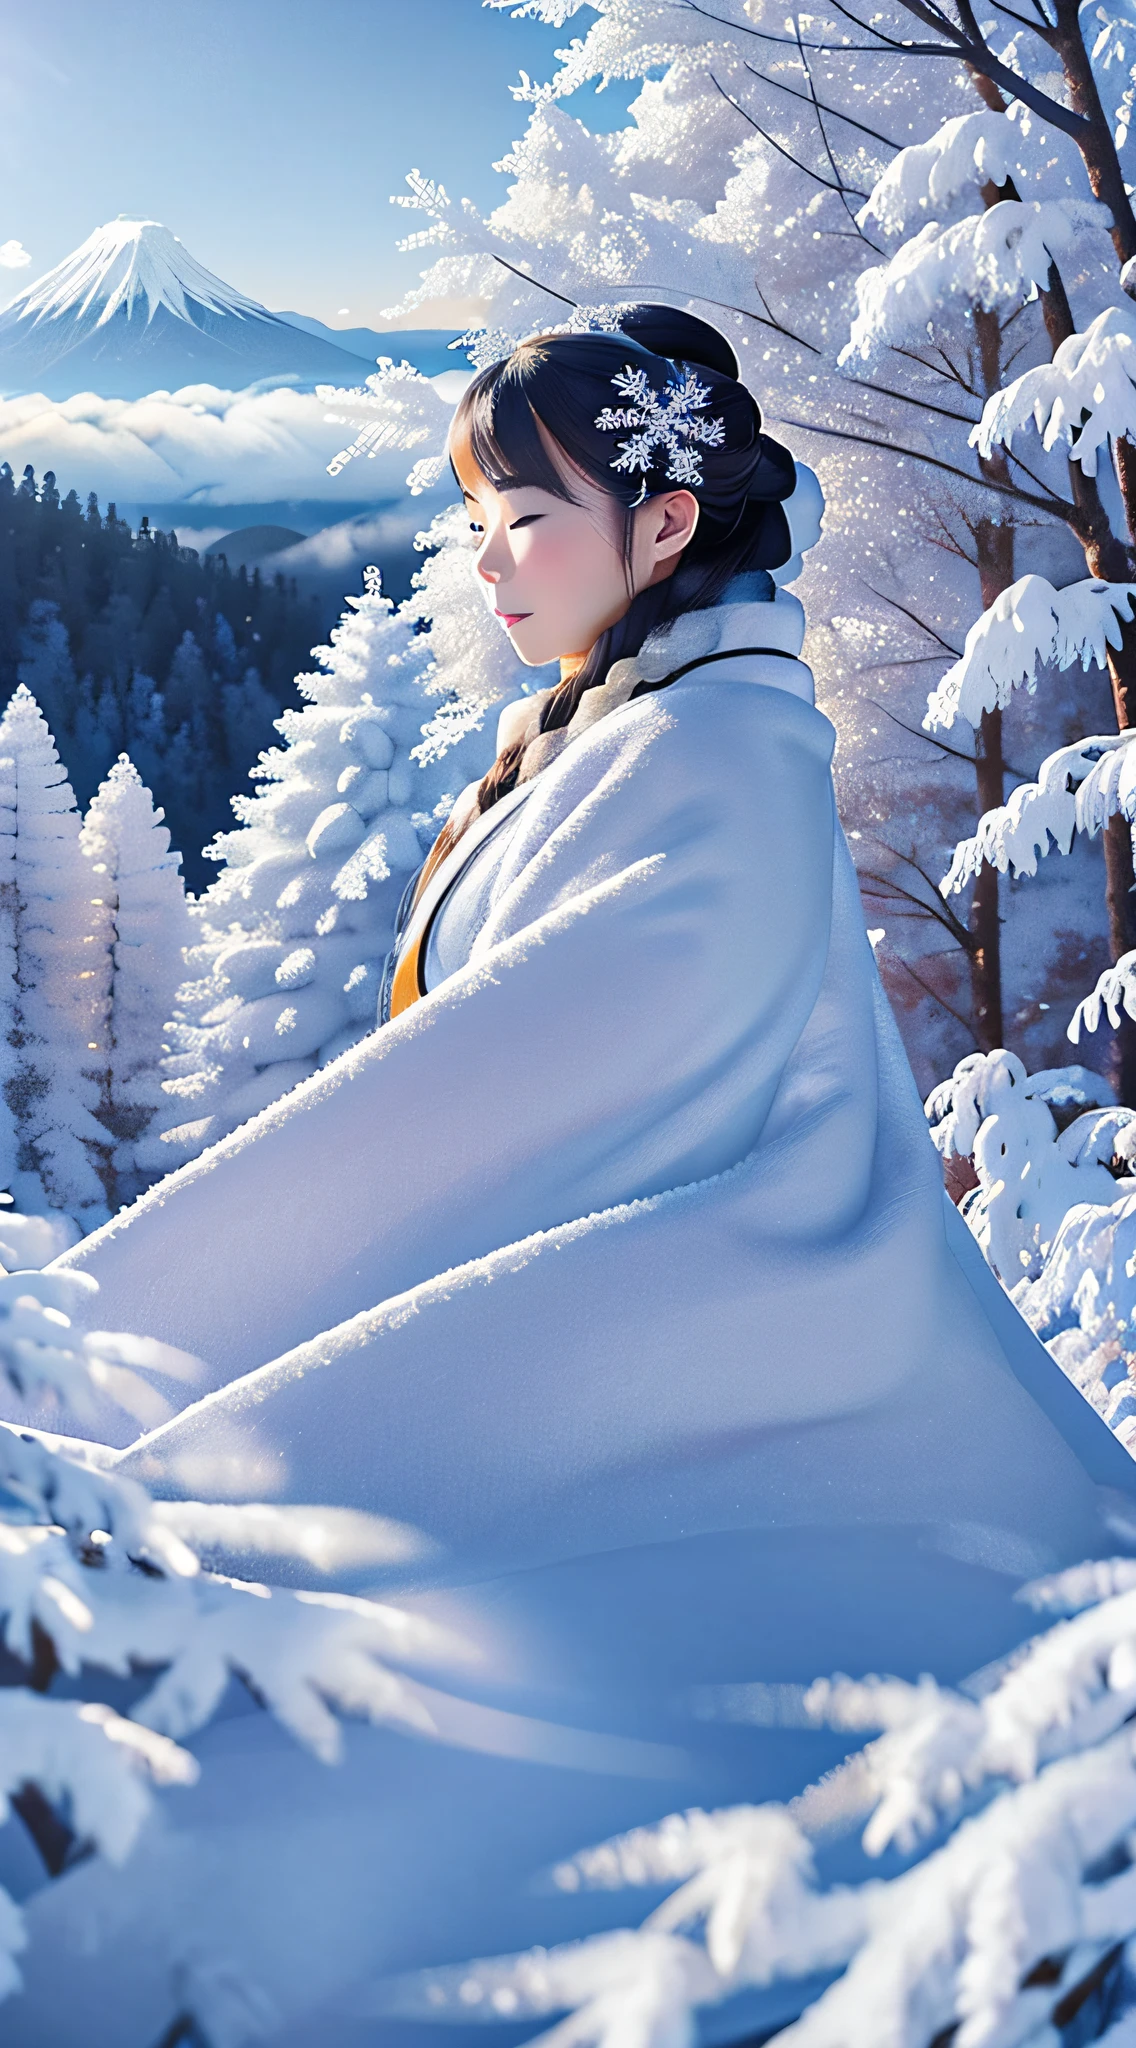 傑作、頂級品質、超現實的、真實感、深冬時節，在深藍色天空的襯托下，雪山樹木上的霜之美、霧氣流過雪山、有霜的樹々穿著純白色日本和服的美麗長銀髮女精靈依偎著「雪女」